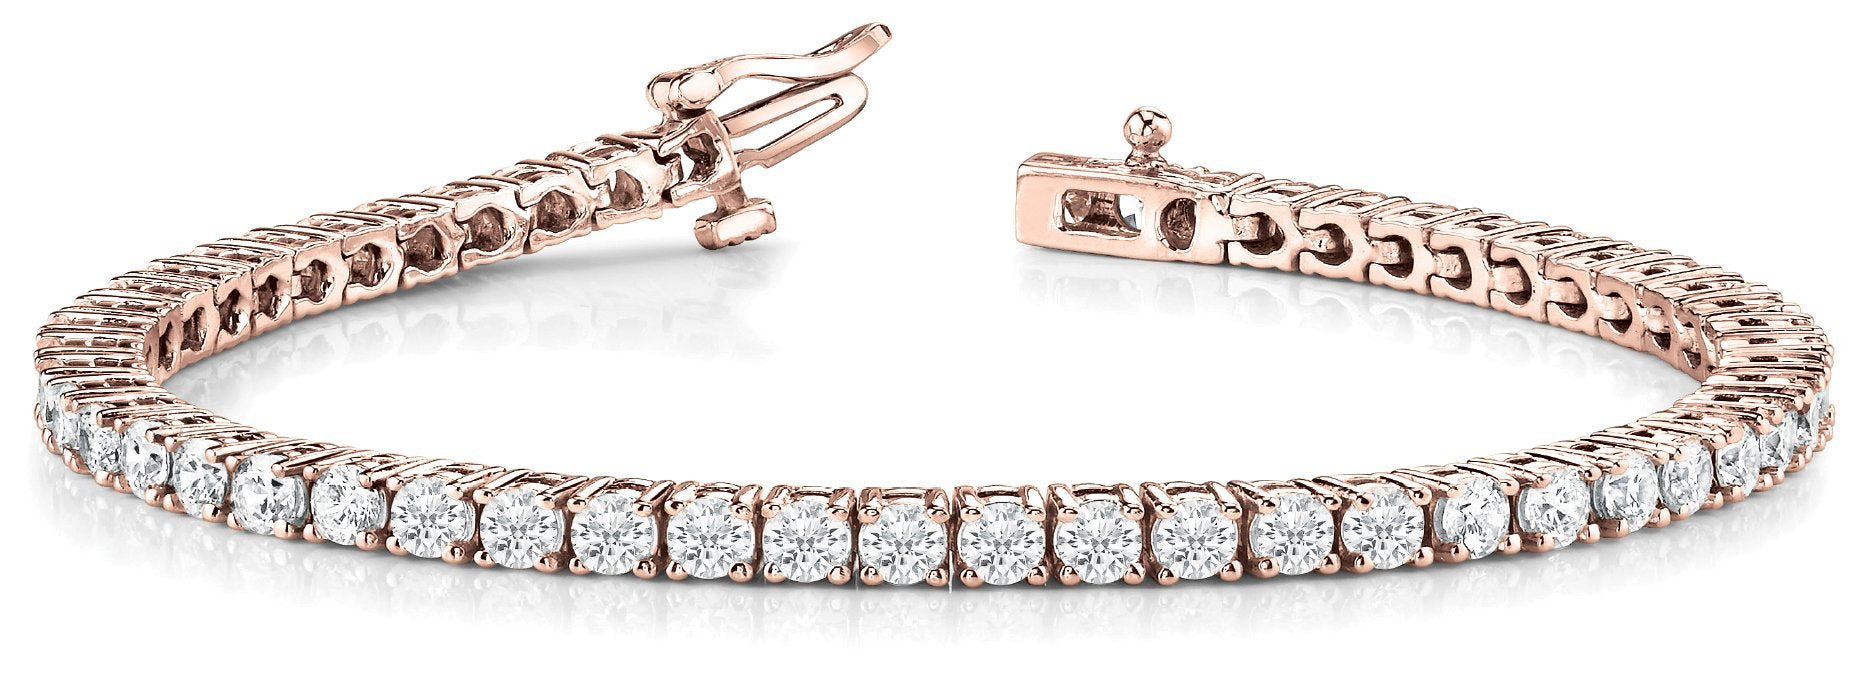 Line Diamond Bracelet 6.36ct tw Ladies - 14kt Gold